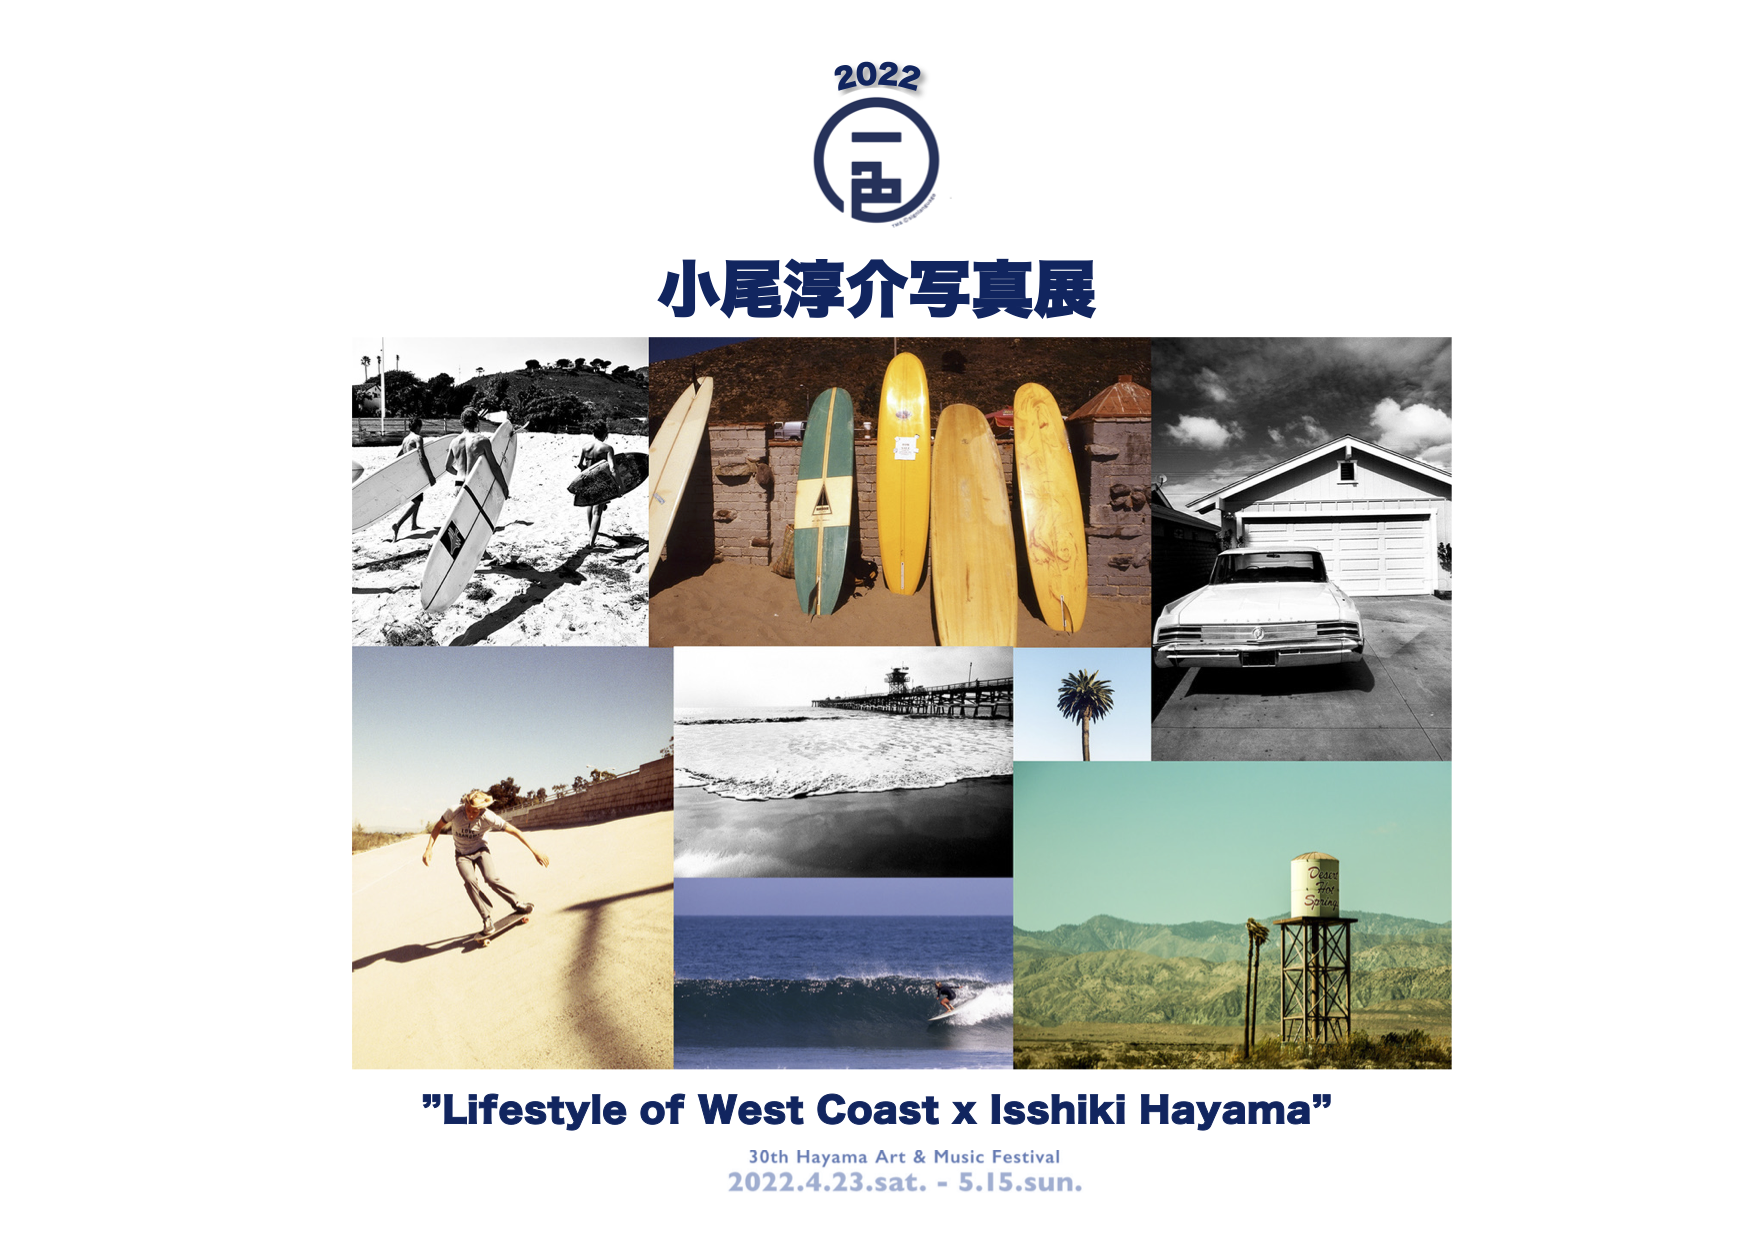 小尾淳介写真展 ”Life Style of West Coast x Isshiki Hayama”